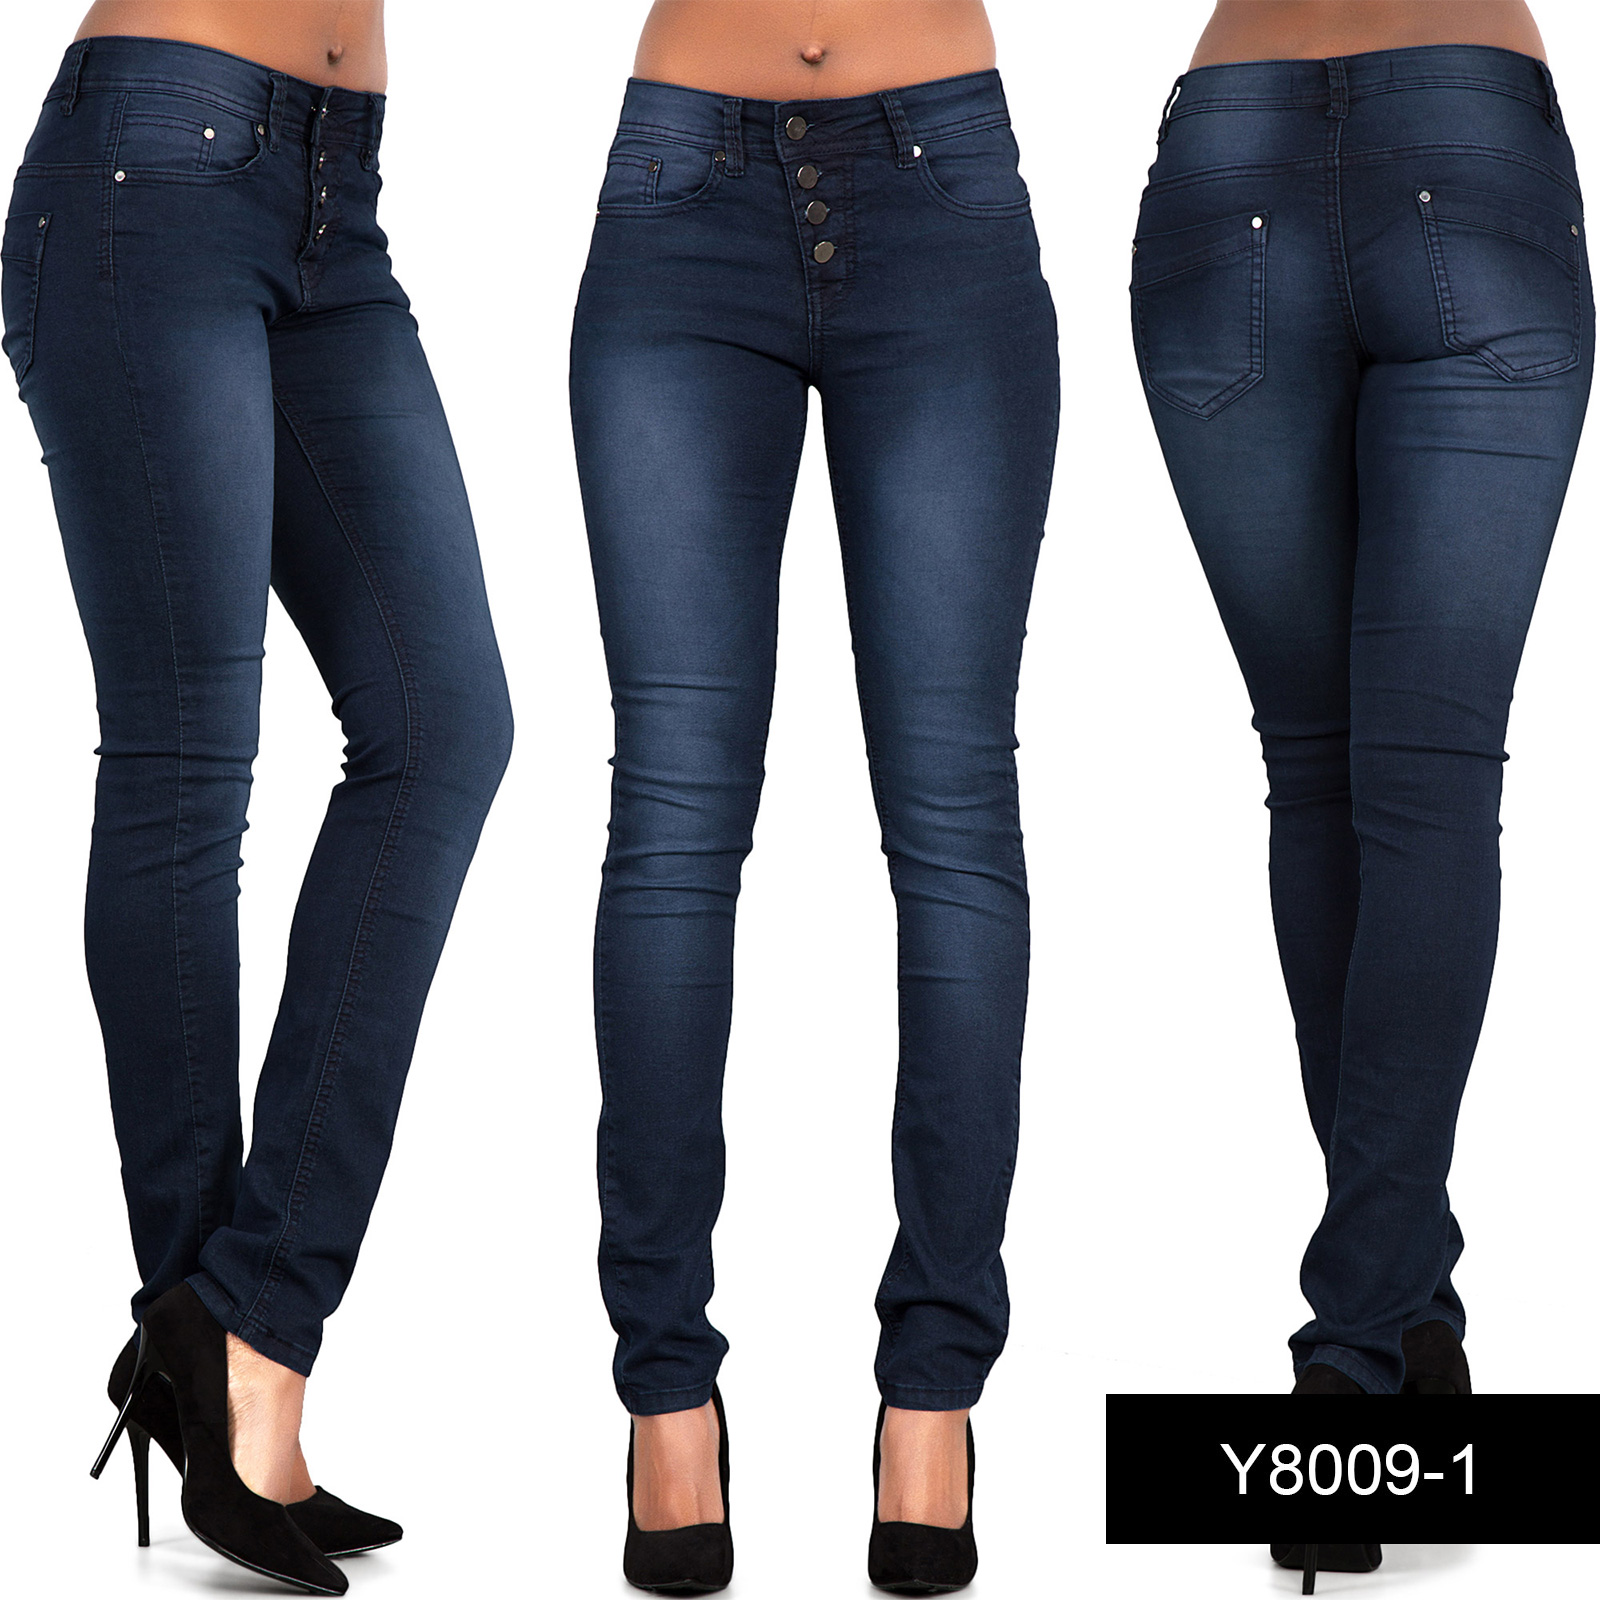 Womens Ladies Sexy High Waist Skinny Jeans Blue Stretch Denim Size 6 16 Ebay